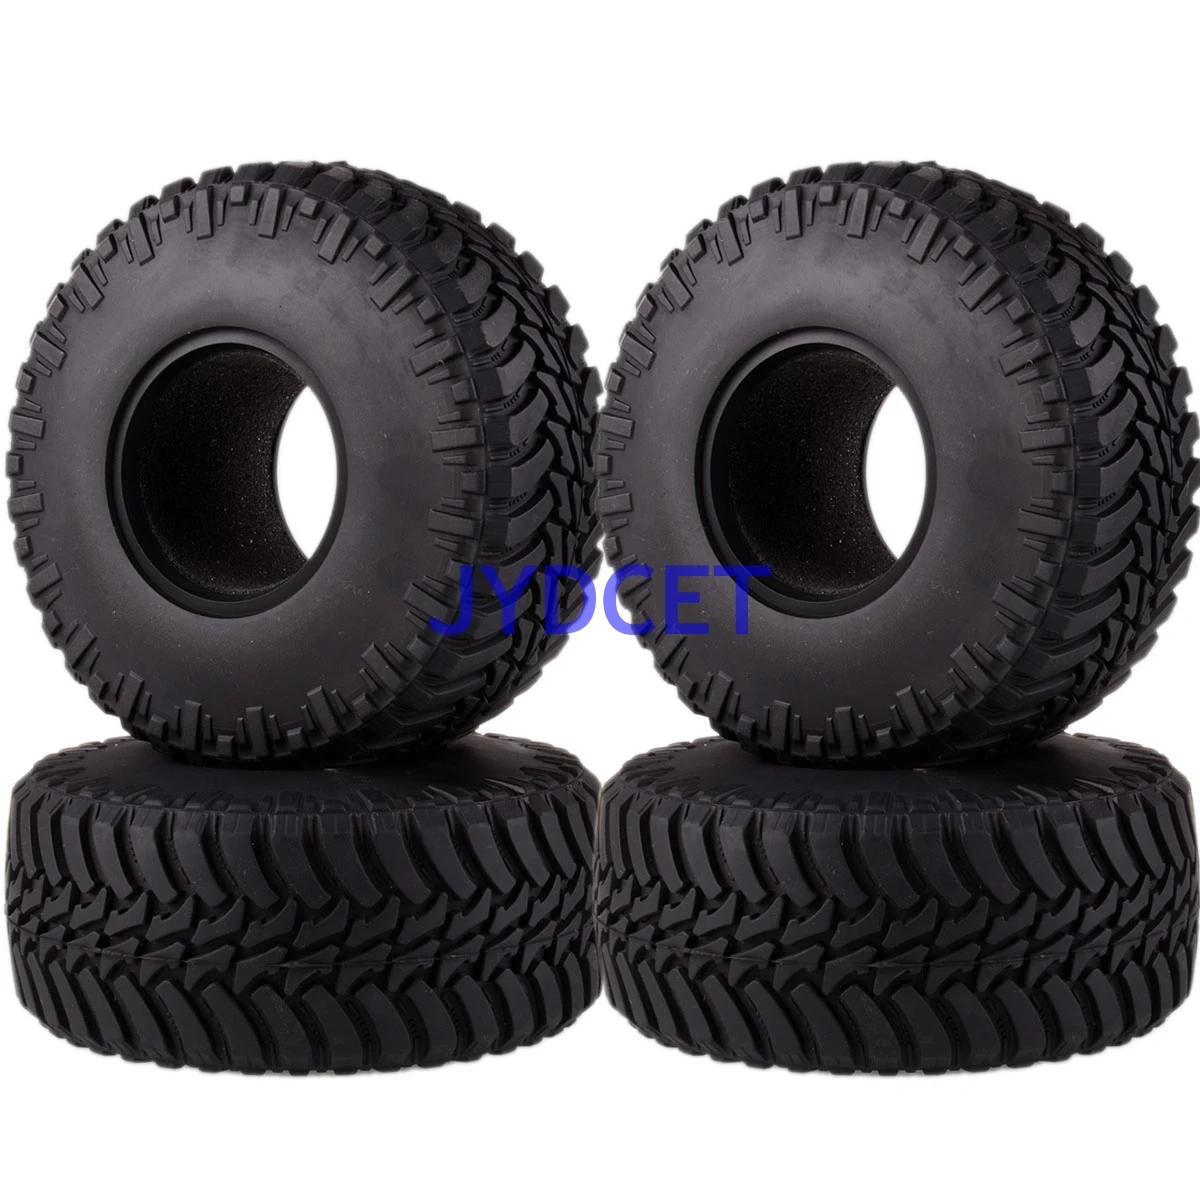 

4pcs 2.2" Super Swamper Rocks Tires AX-3033 For RC Model 1/10 Off-Road Climbing Rock Crawler